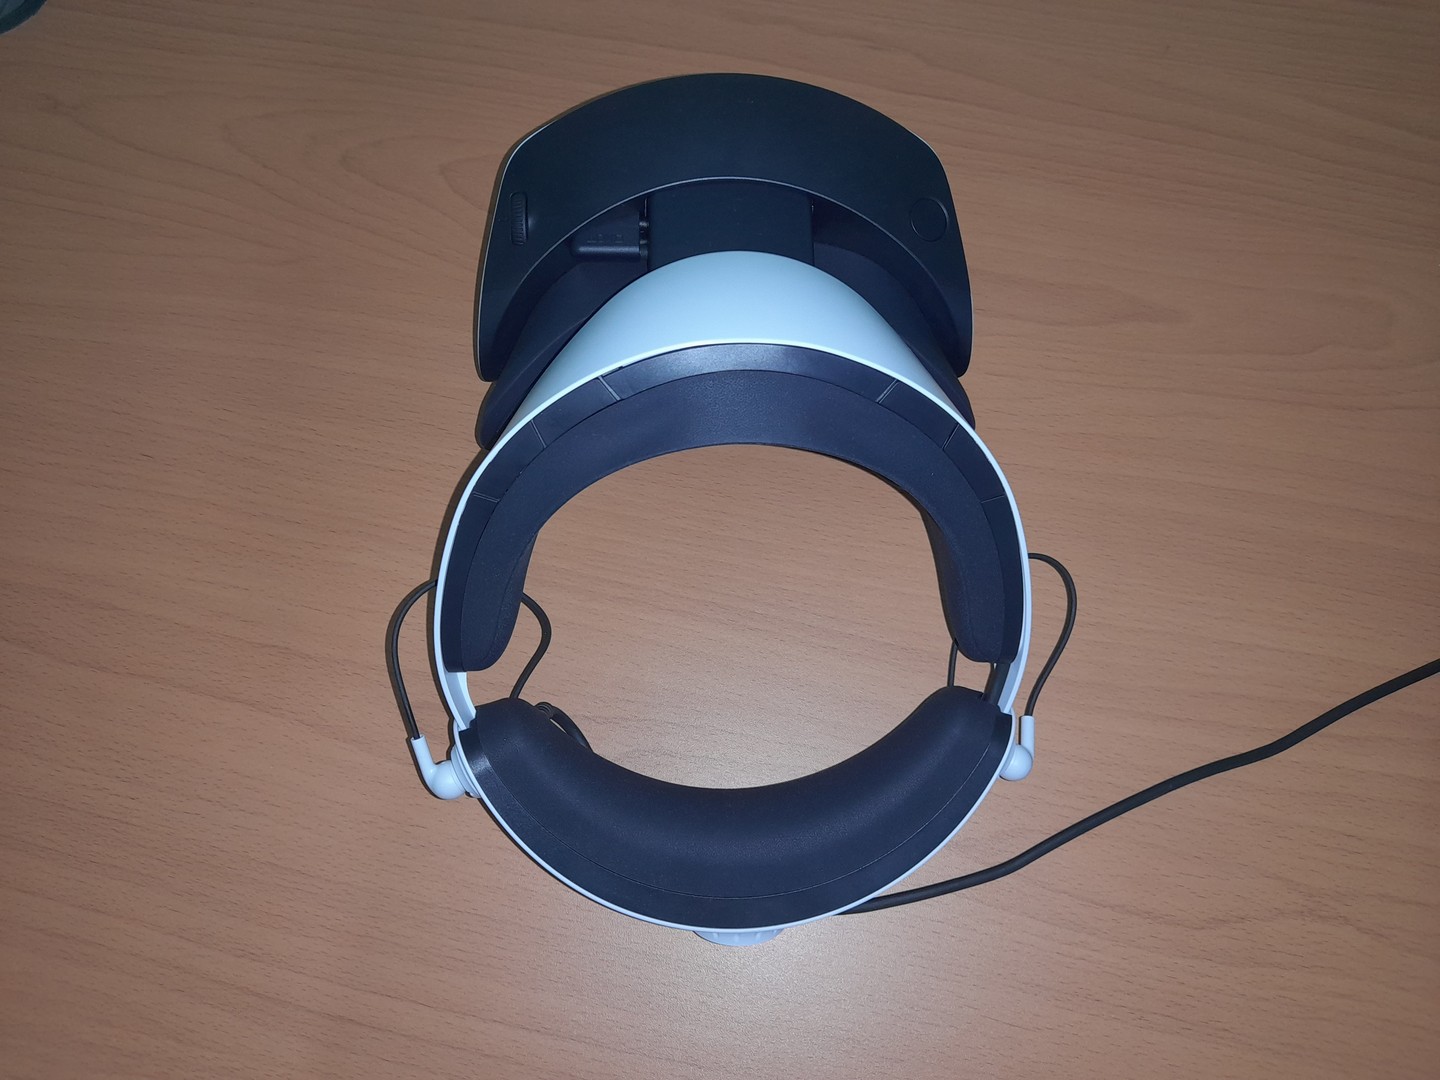 consolas y videojuegos - psvr2 : headset de realidad virtual para playstation 5 (3 horas de uso) 4